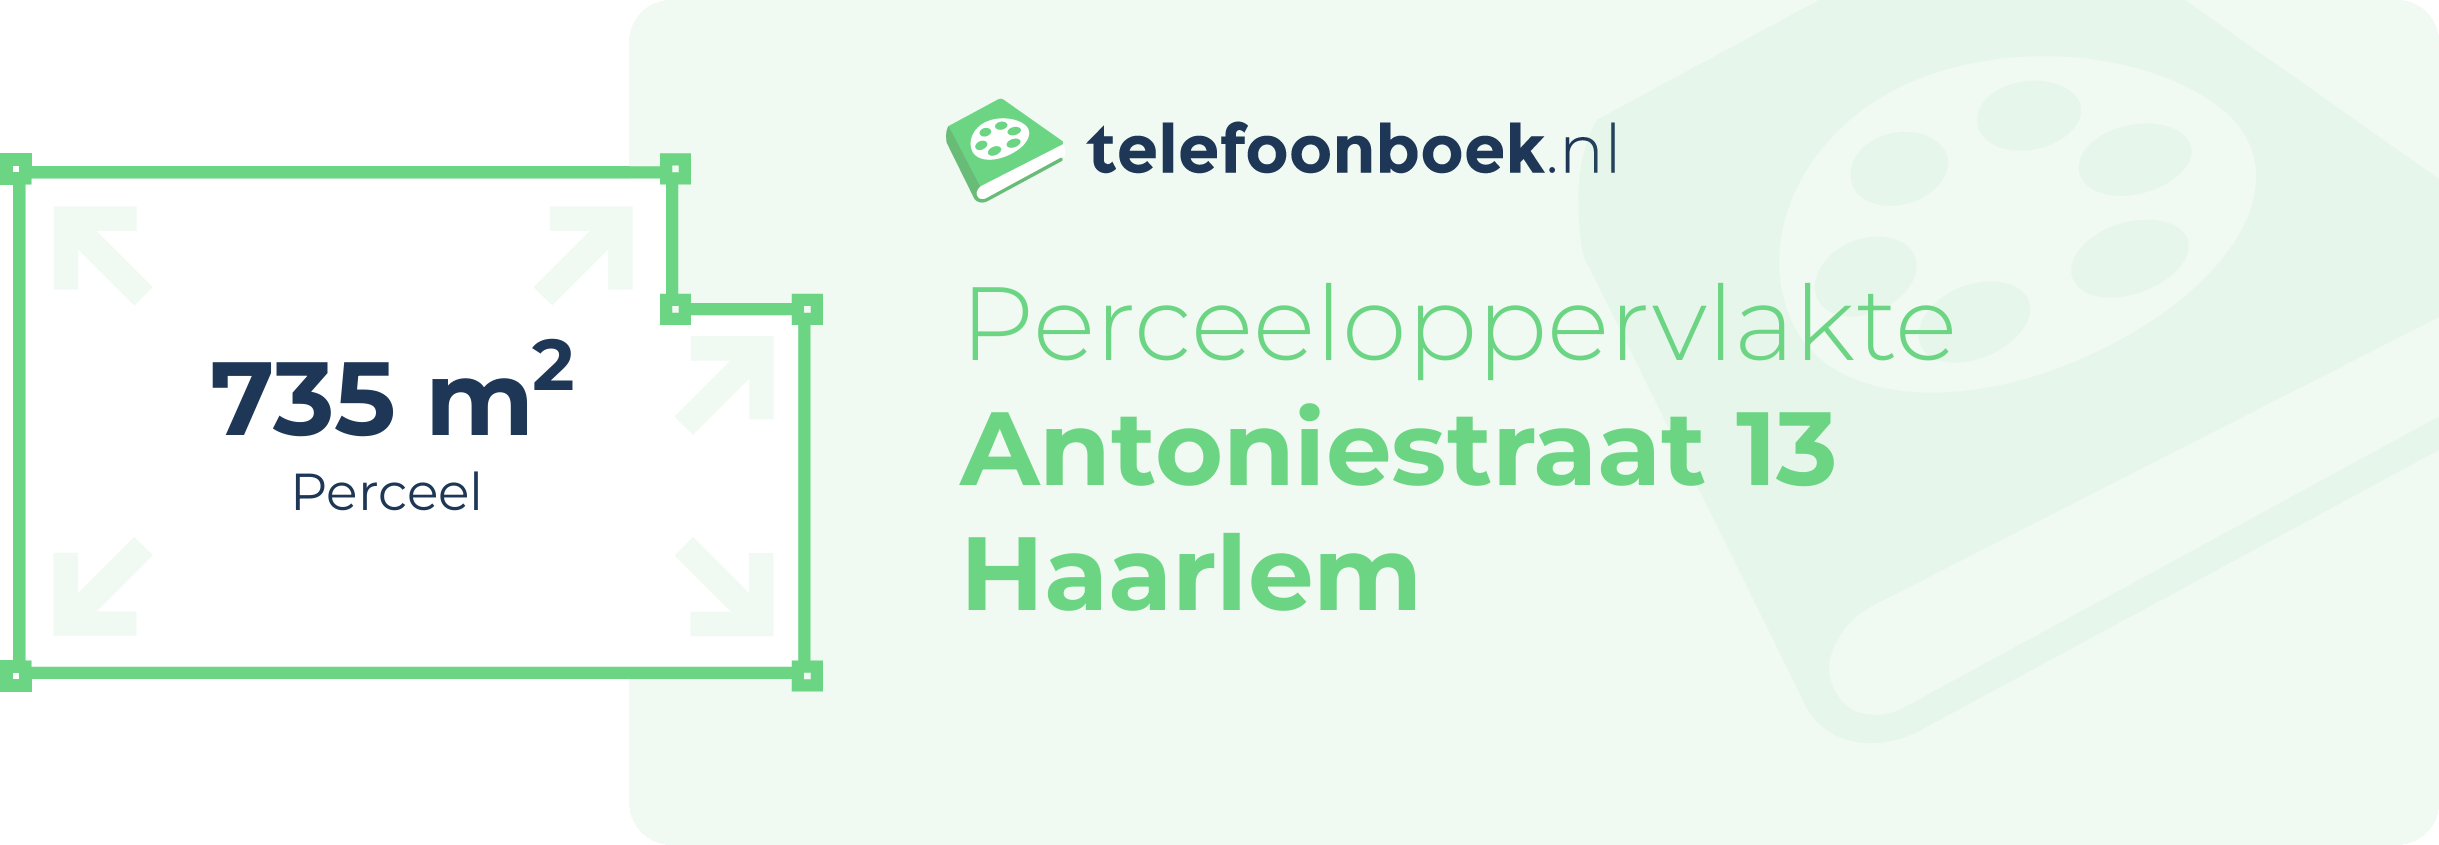 Perceeloppervlakte Antoniestraat 13 Haarlem